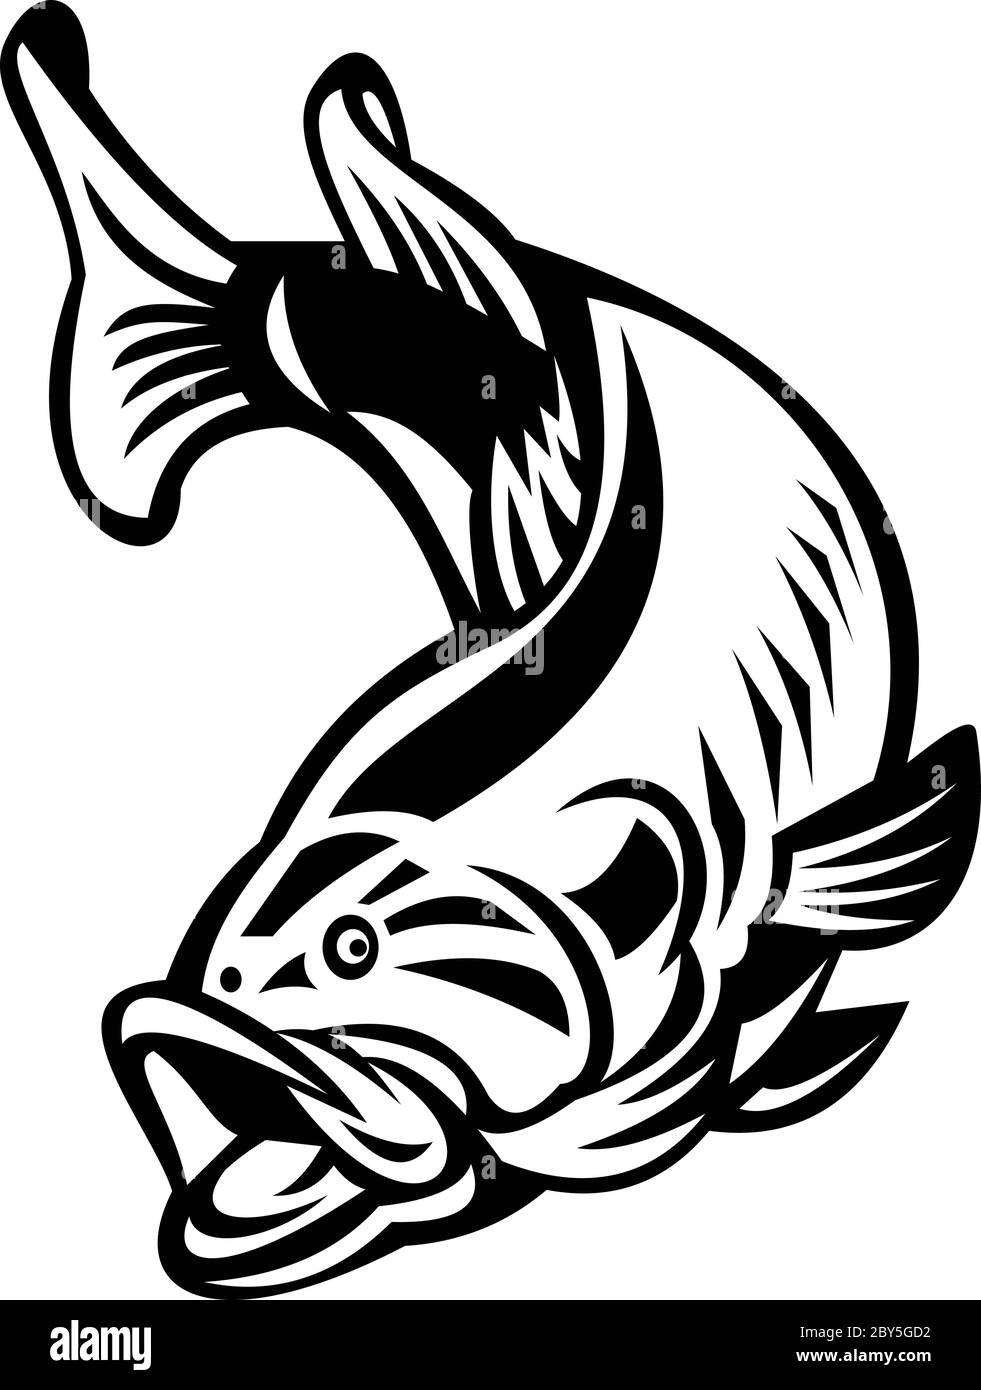 Illustrazione di un basso di largemouth (Micropterus salmoides), specie di basso nero e un gamefish carnivoro d'acqua dolce, nuotando in giù su retro isolato Illustrazione Vettoriale